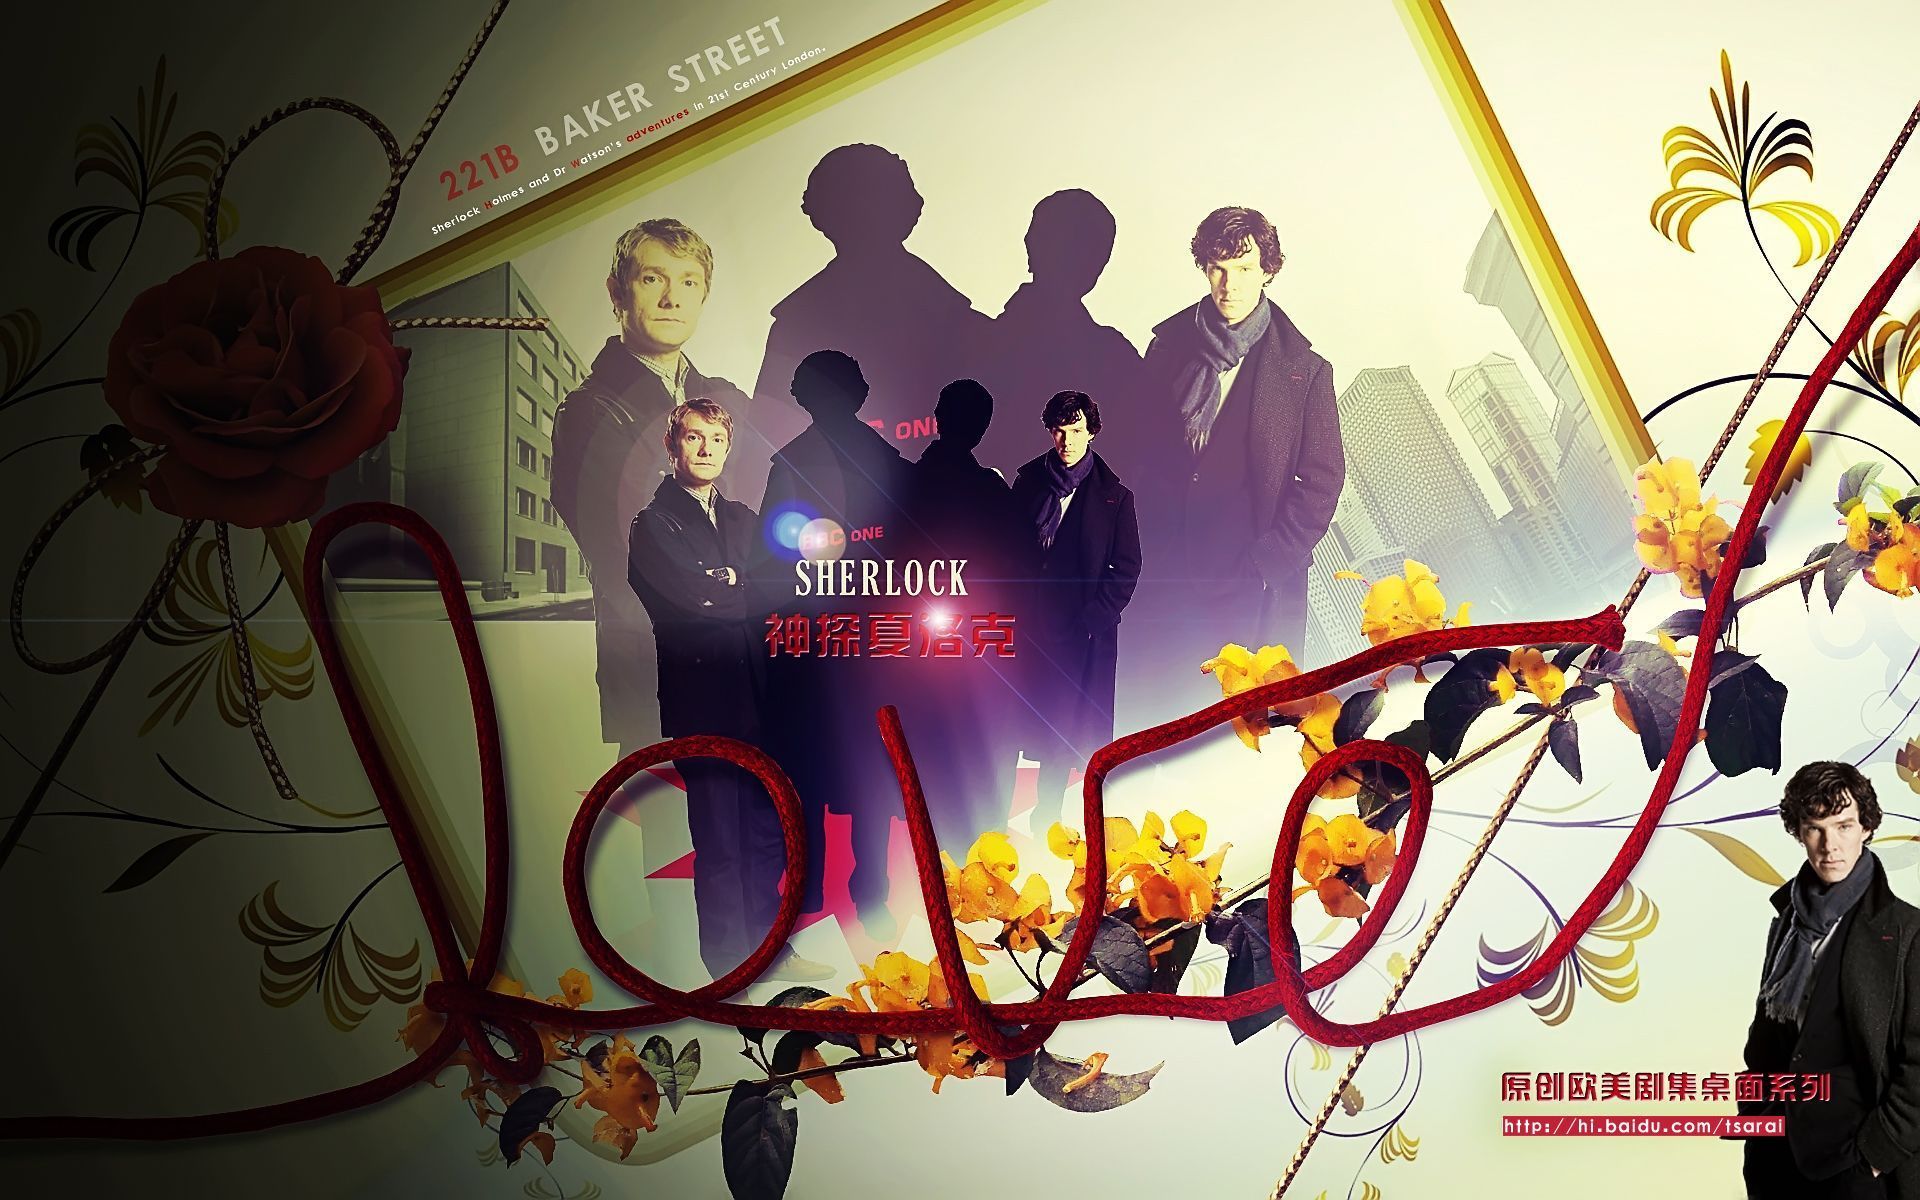 c One Sherlock Sherlock Wallpaper Fanpop